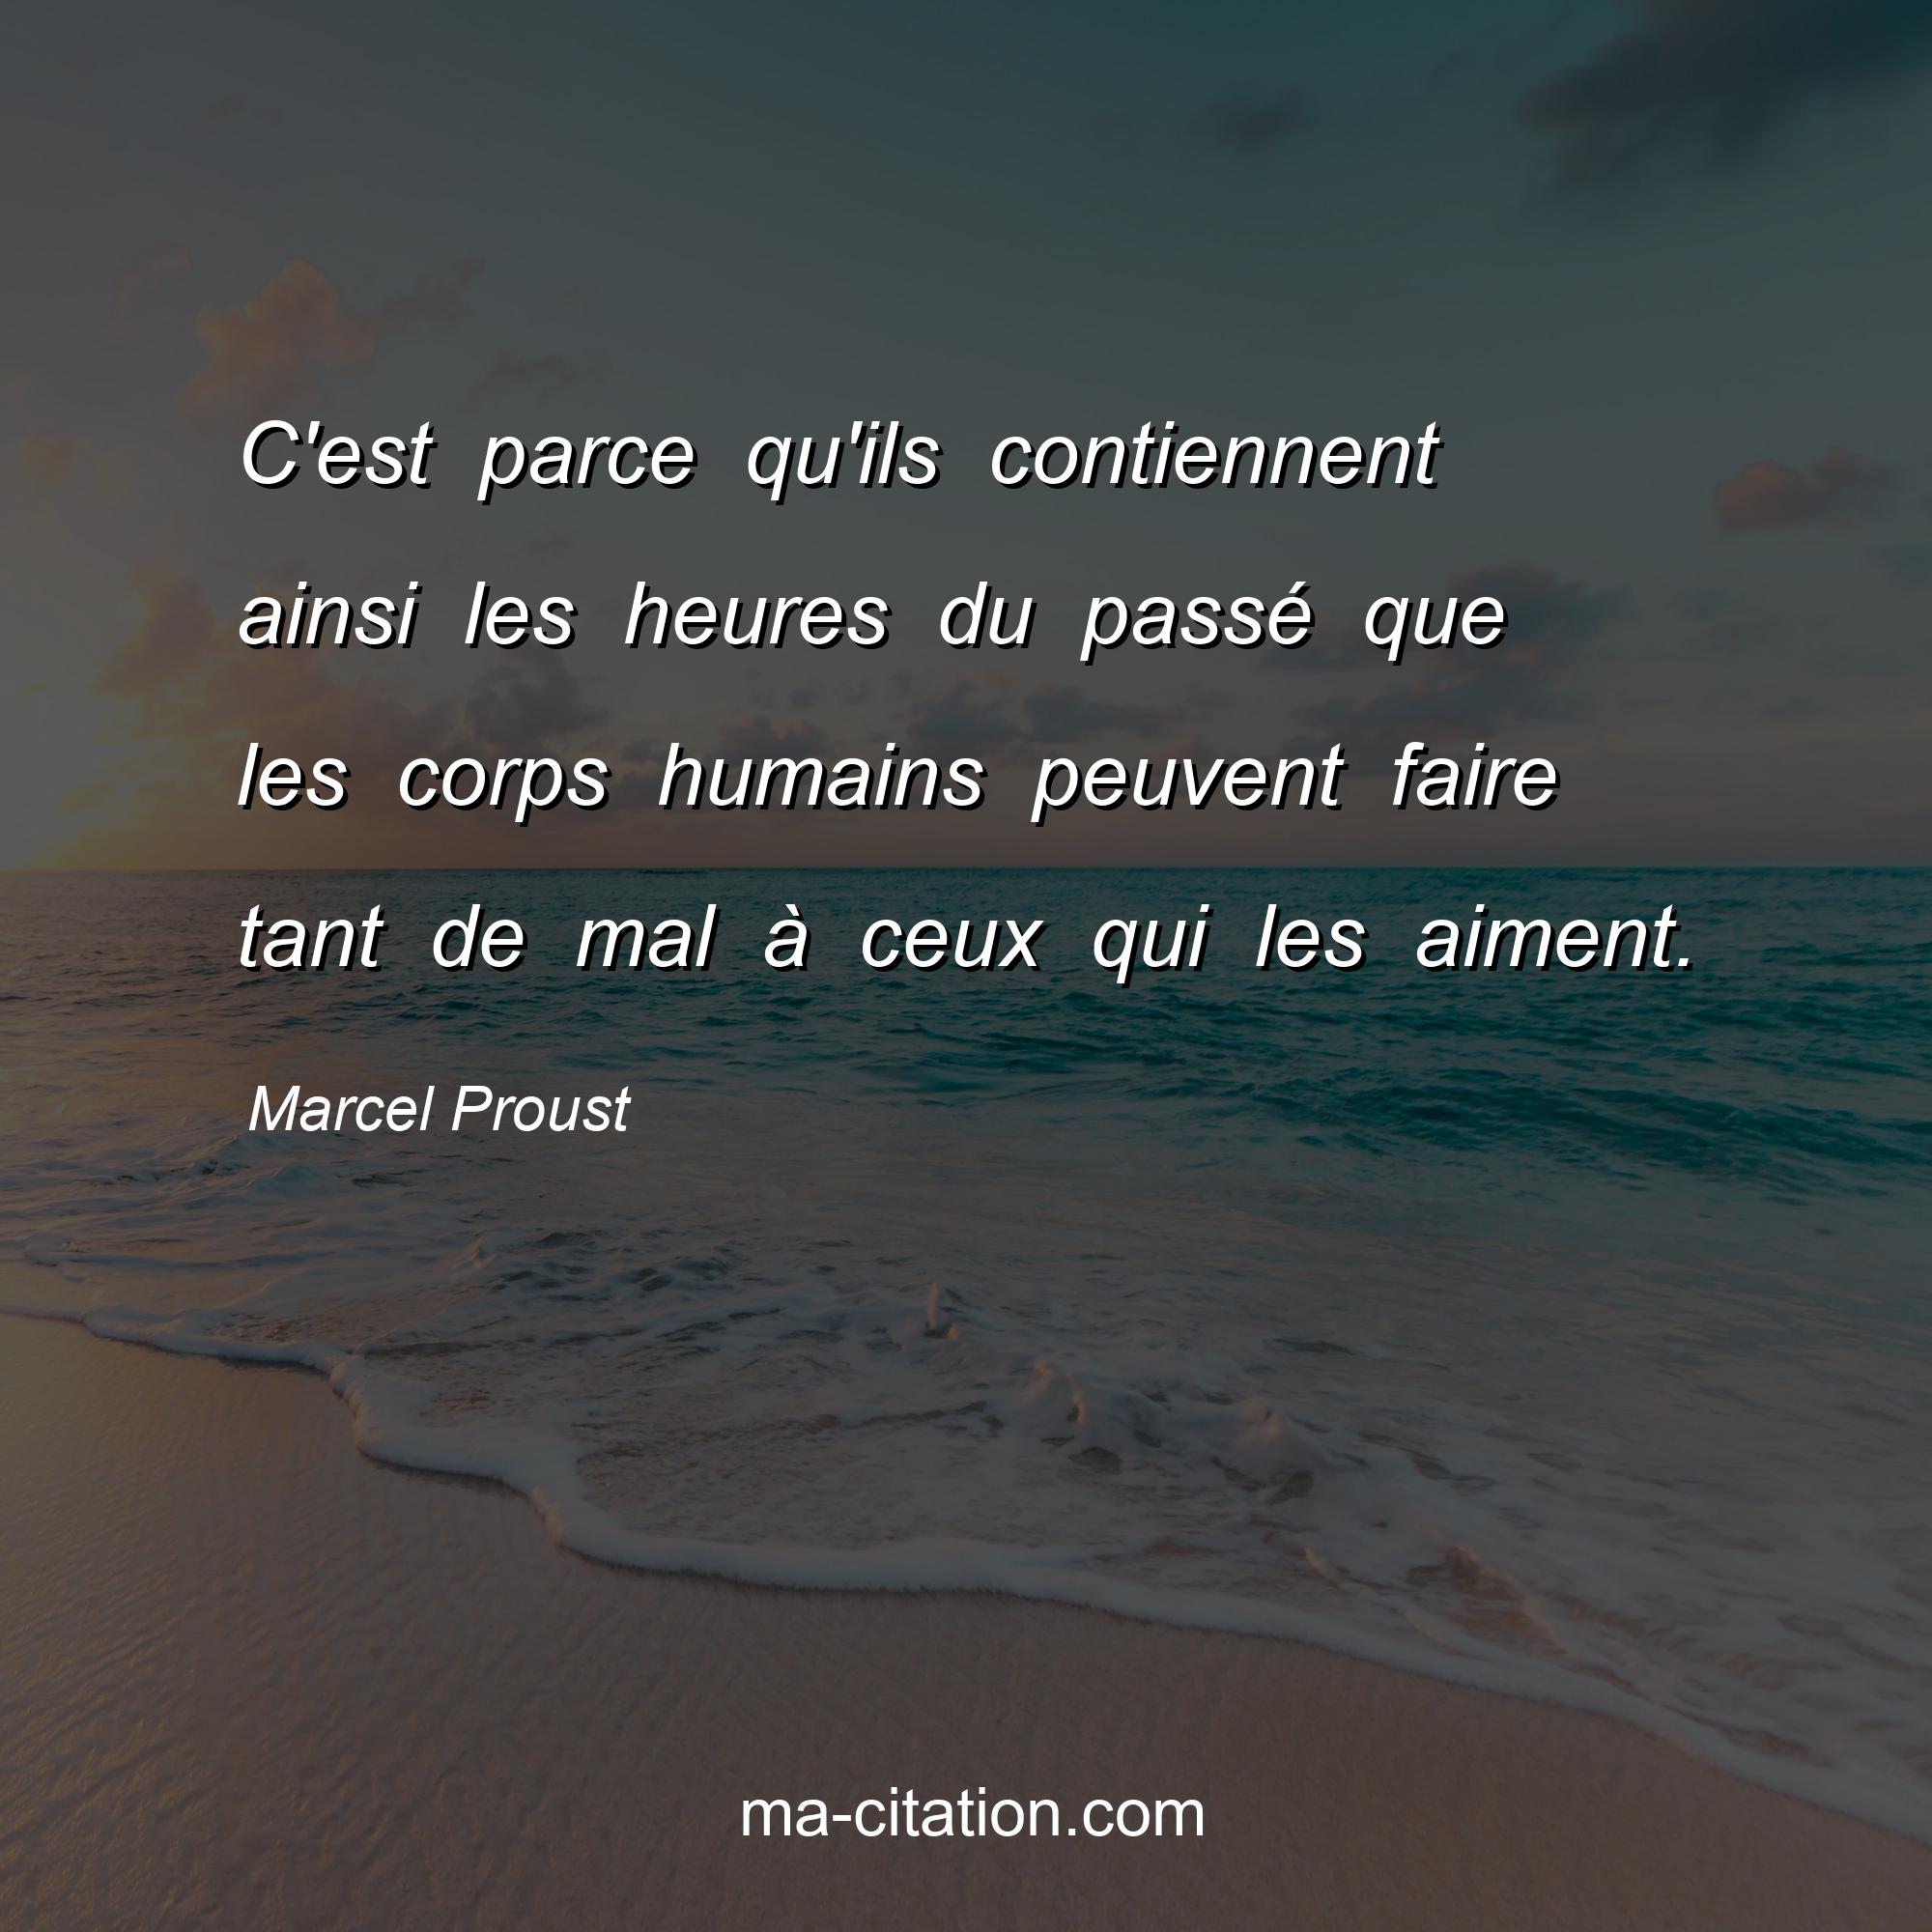 Marcel Proust : C'est parce qu'ils contiennent ainsi les heures du passé que les corps humains peuvent faire tant de mal à ceux qui les aiment.